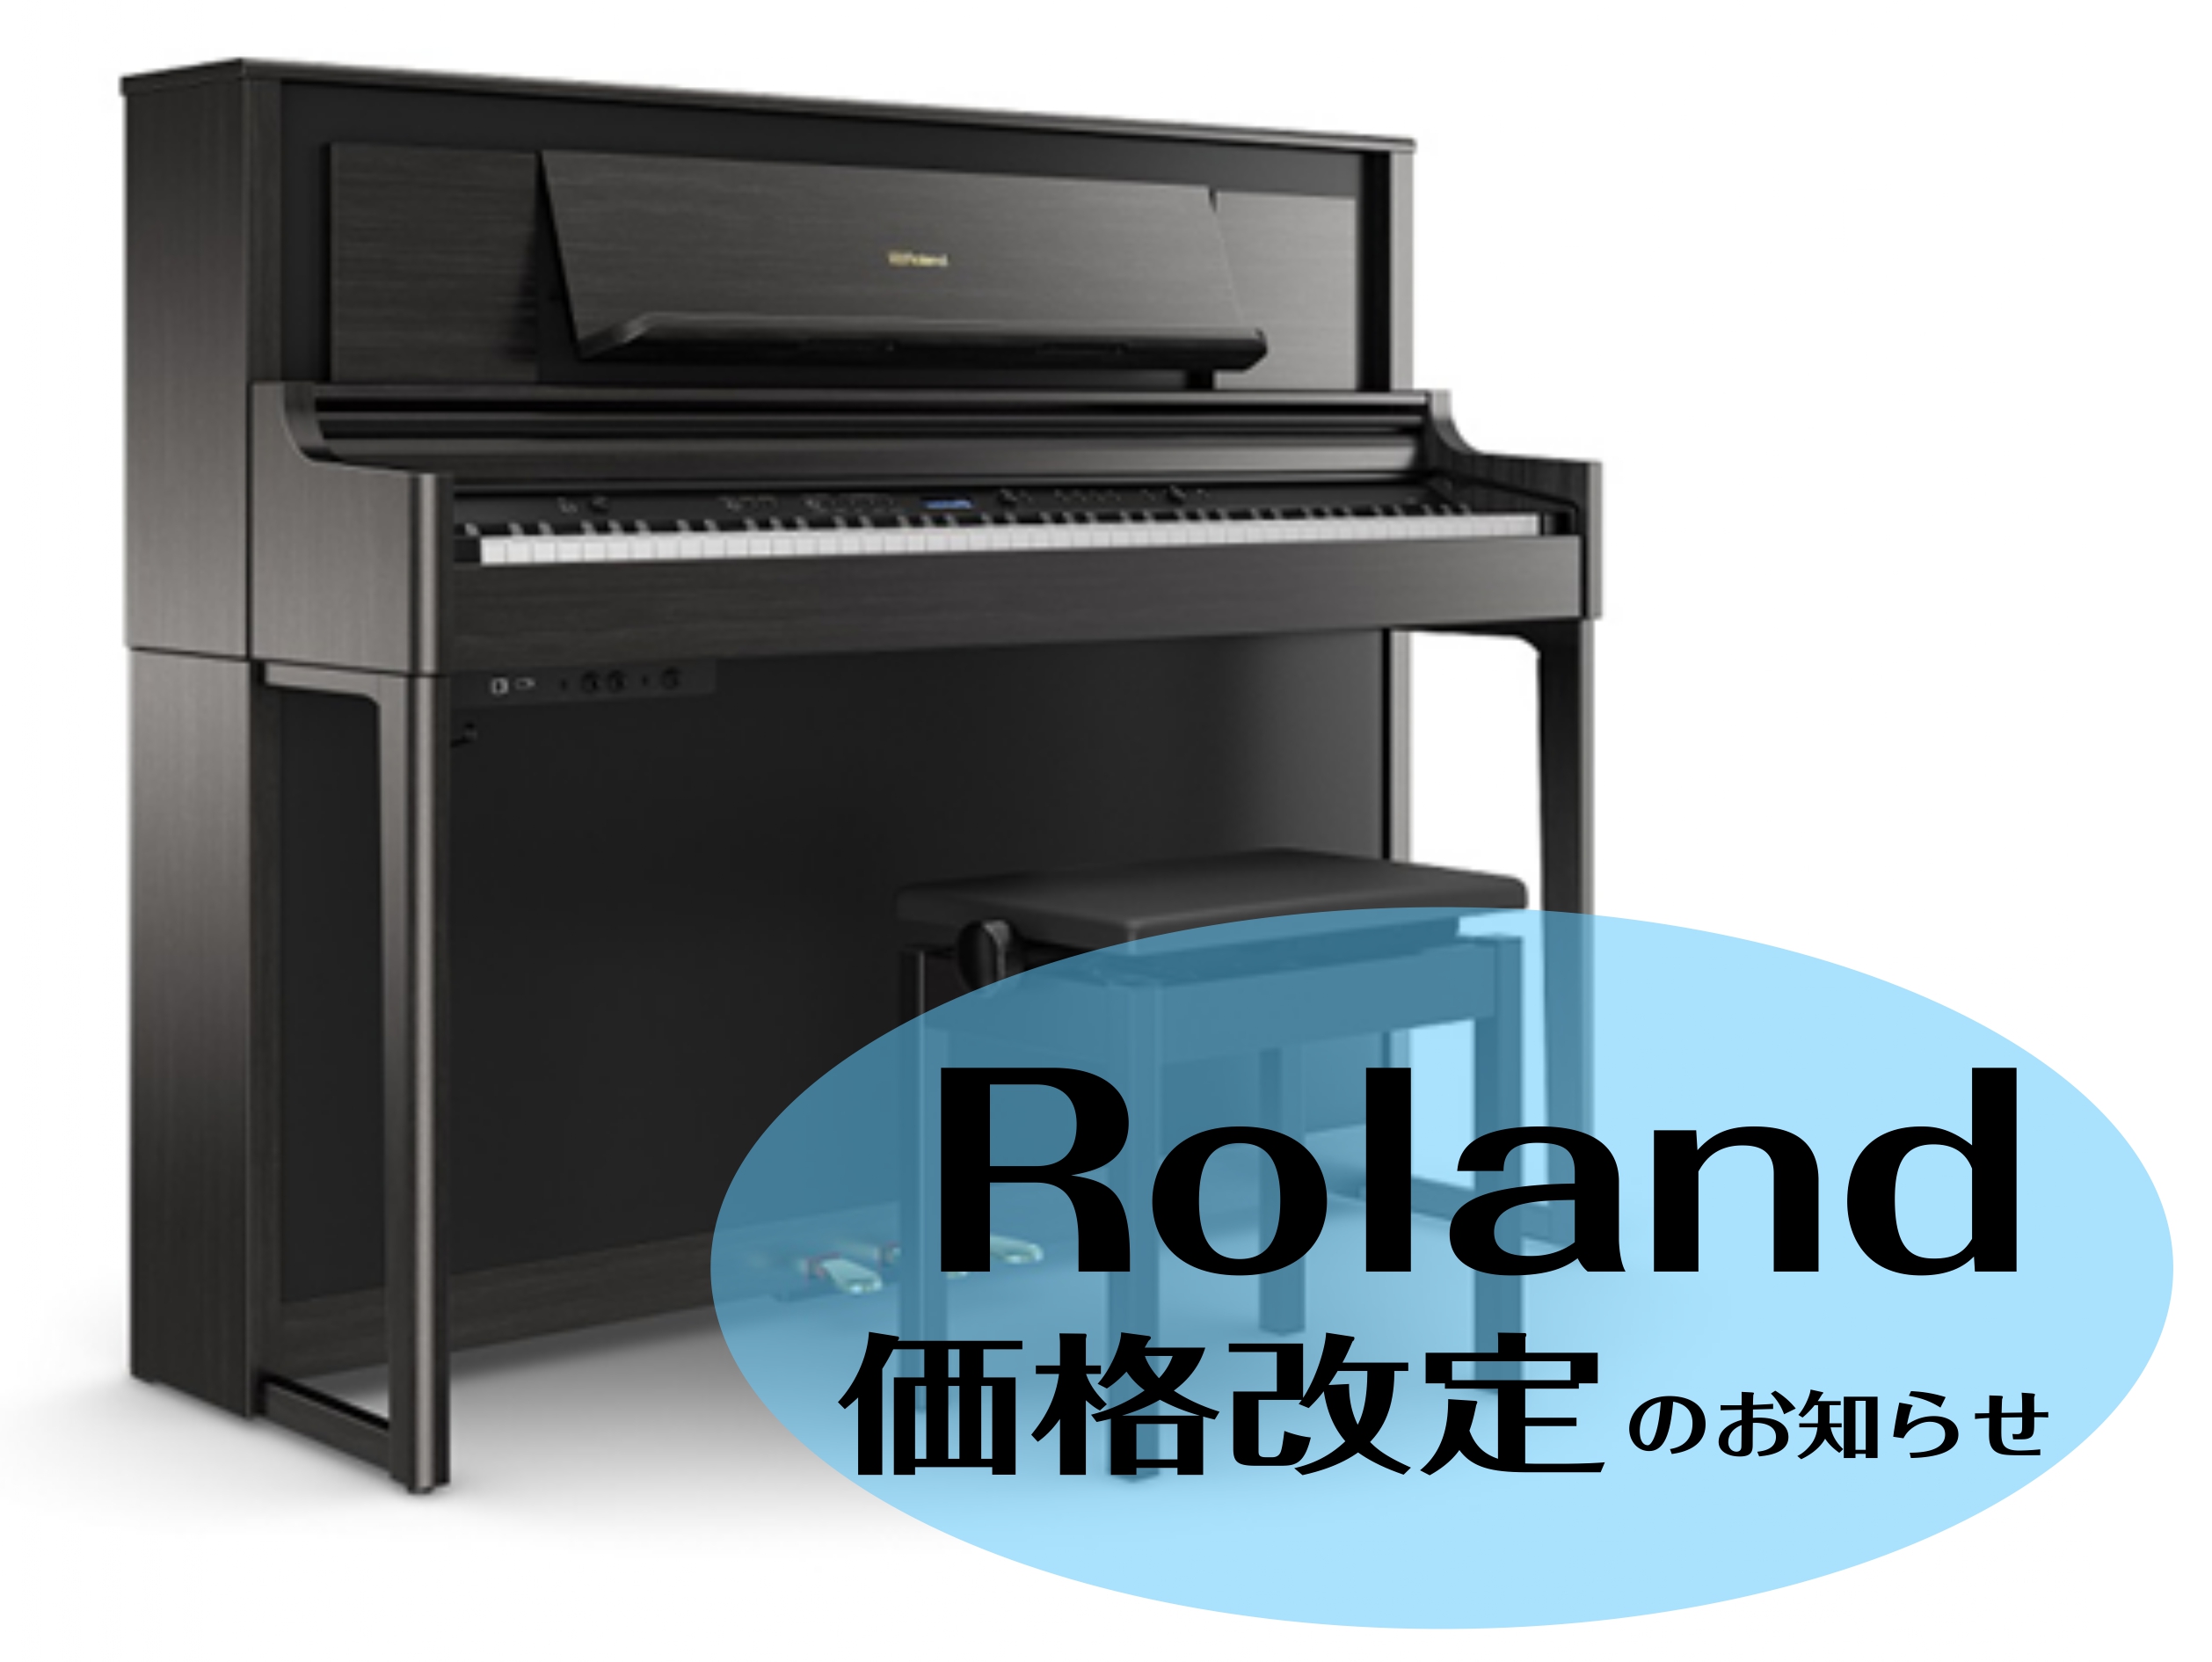 当店でも人気機種の『Roland　LXシリーズ』！ 木材と樹脂のハイブリッド構造による最新鍵盤「ハイブリッド・グランド鍵盤」や、本物のグランドピアノのような響きの「ピュアアコースティック·ピアノ音源」でお子さんから大人の方までオススメできます。 そんなLXシリーズが11/1より、さらにお求めやすくな […]